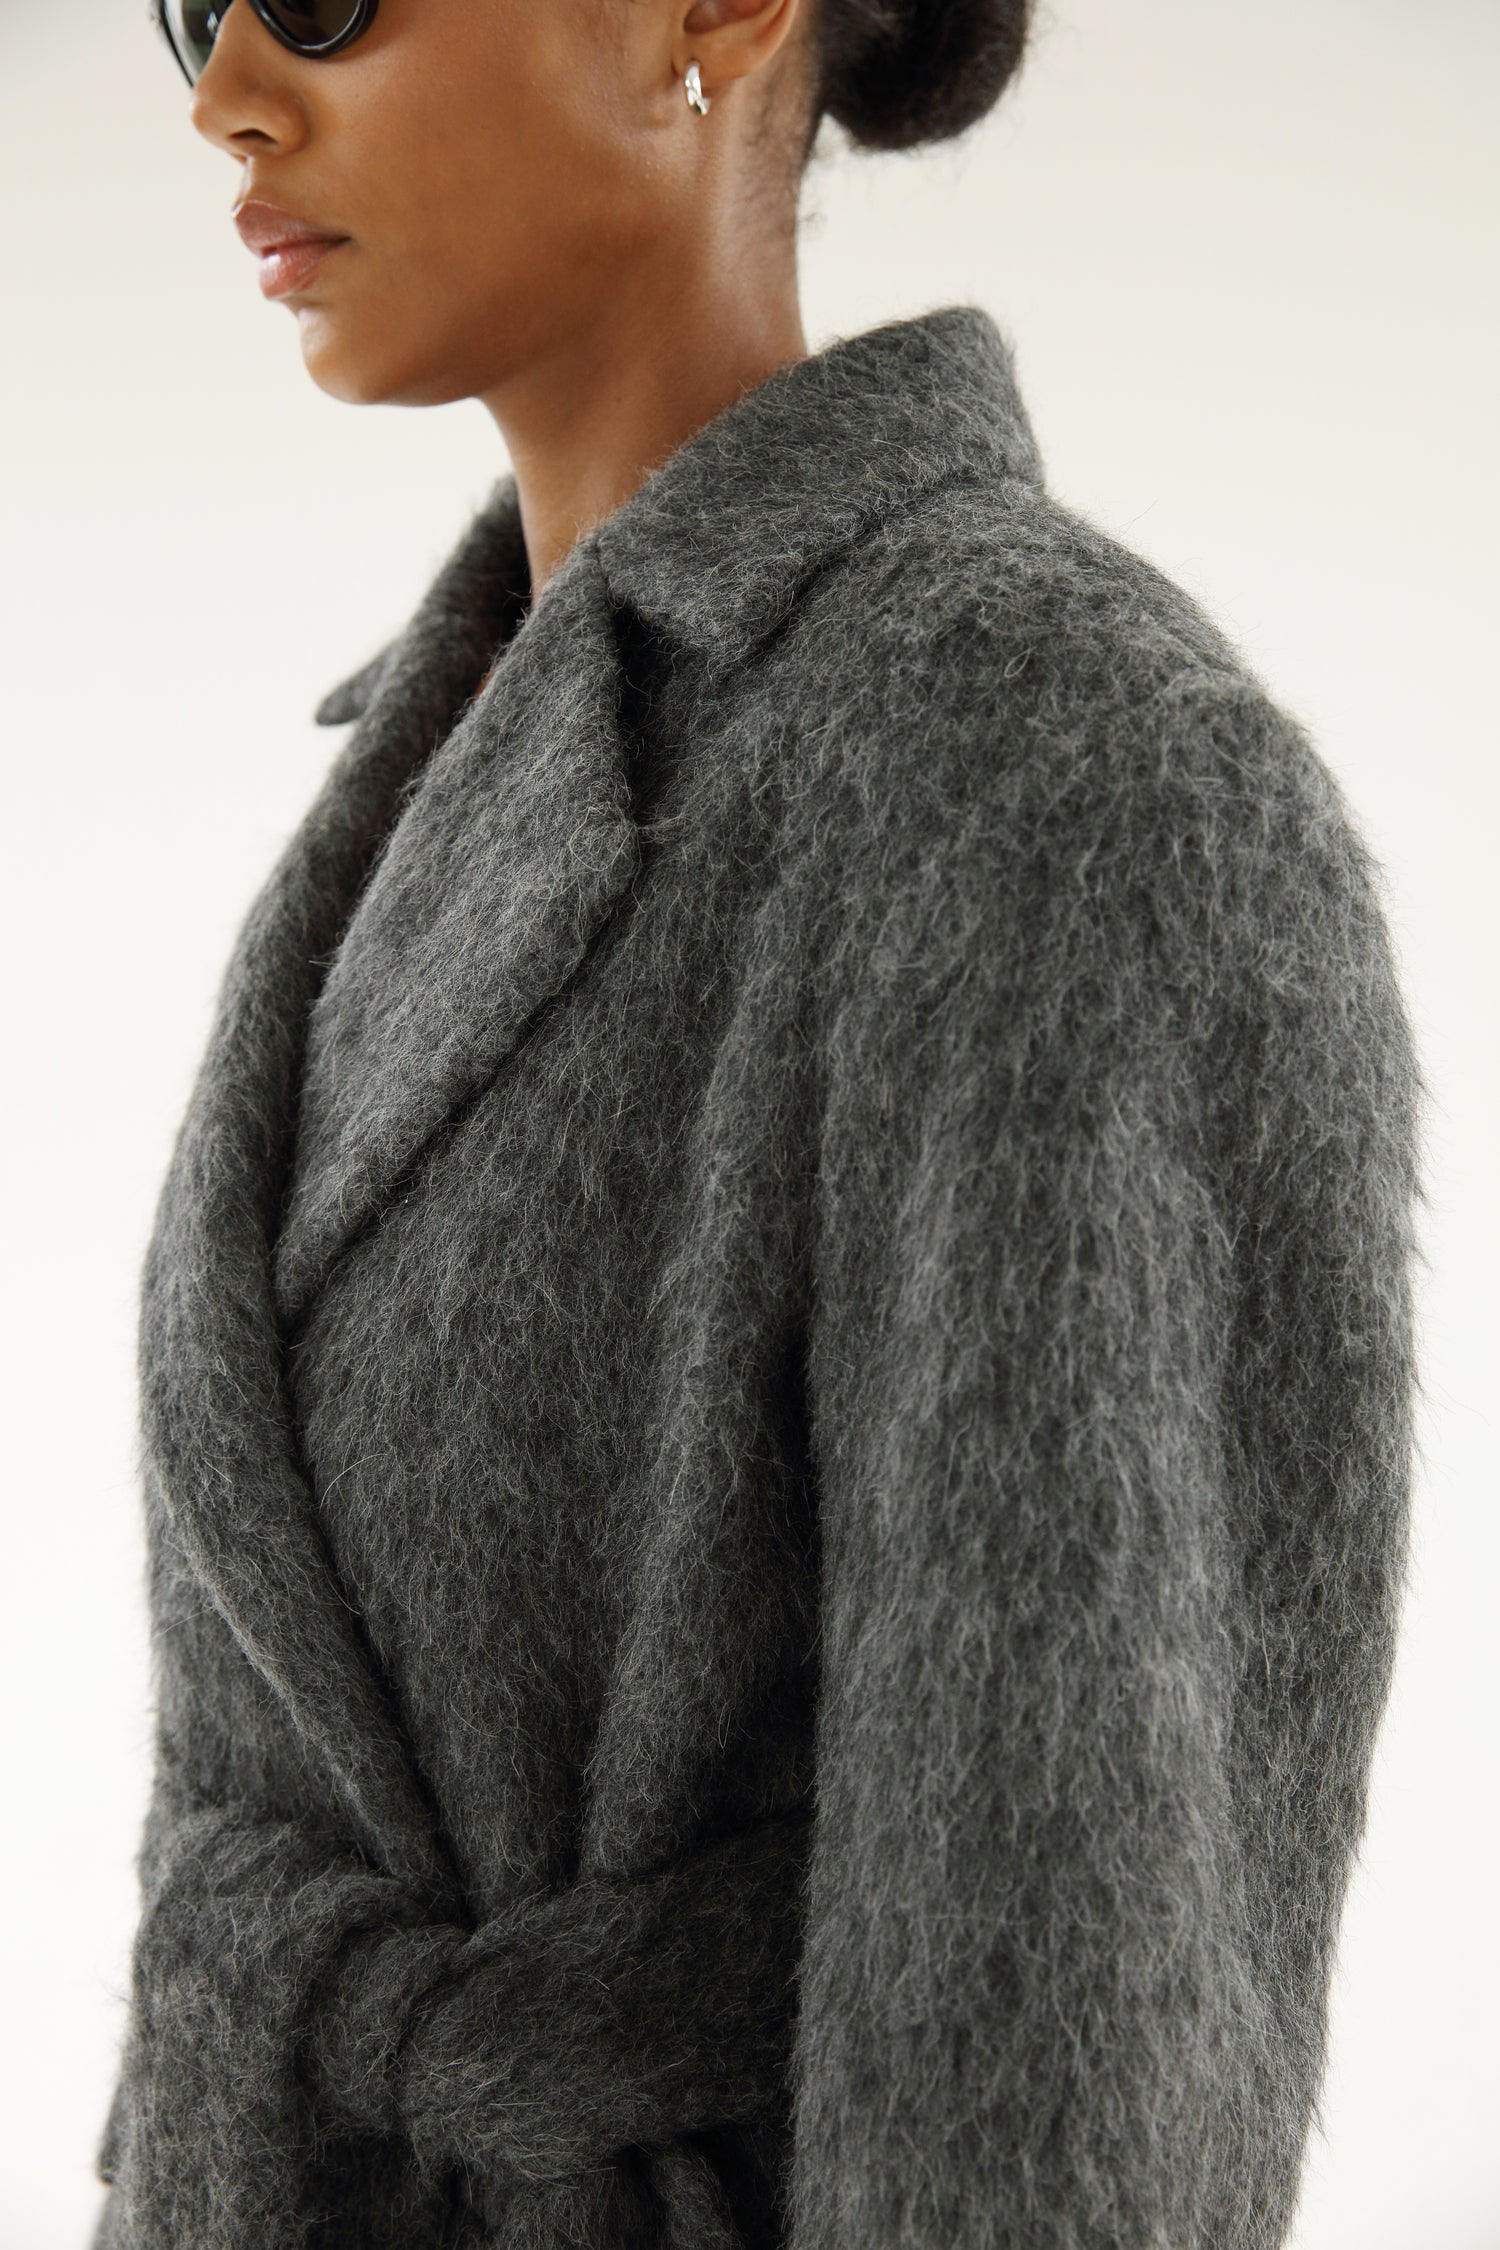 Ivy Mohair Coat, dark grey